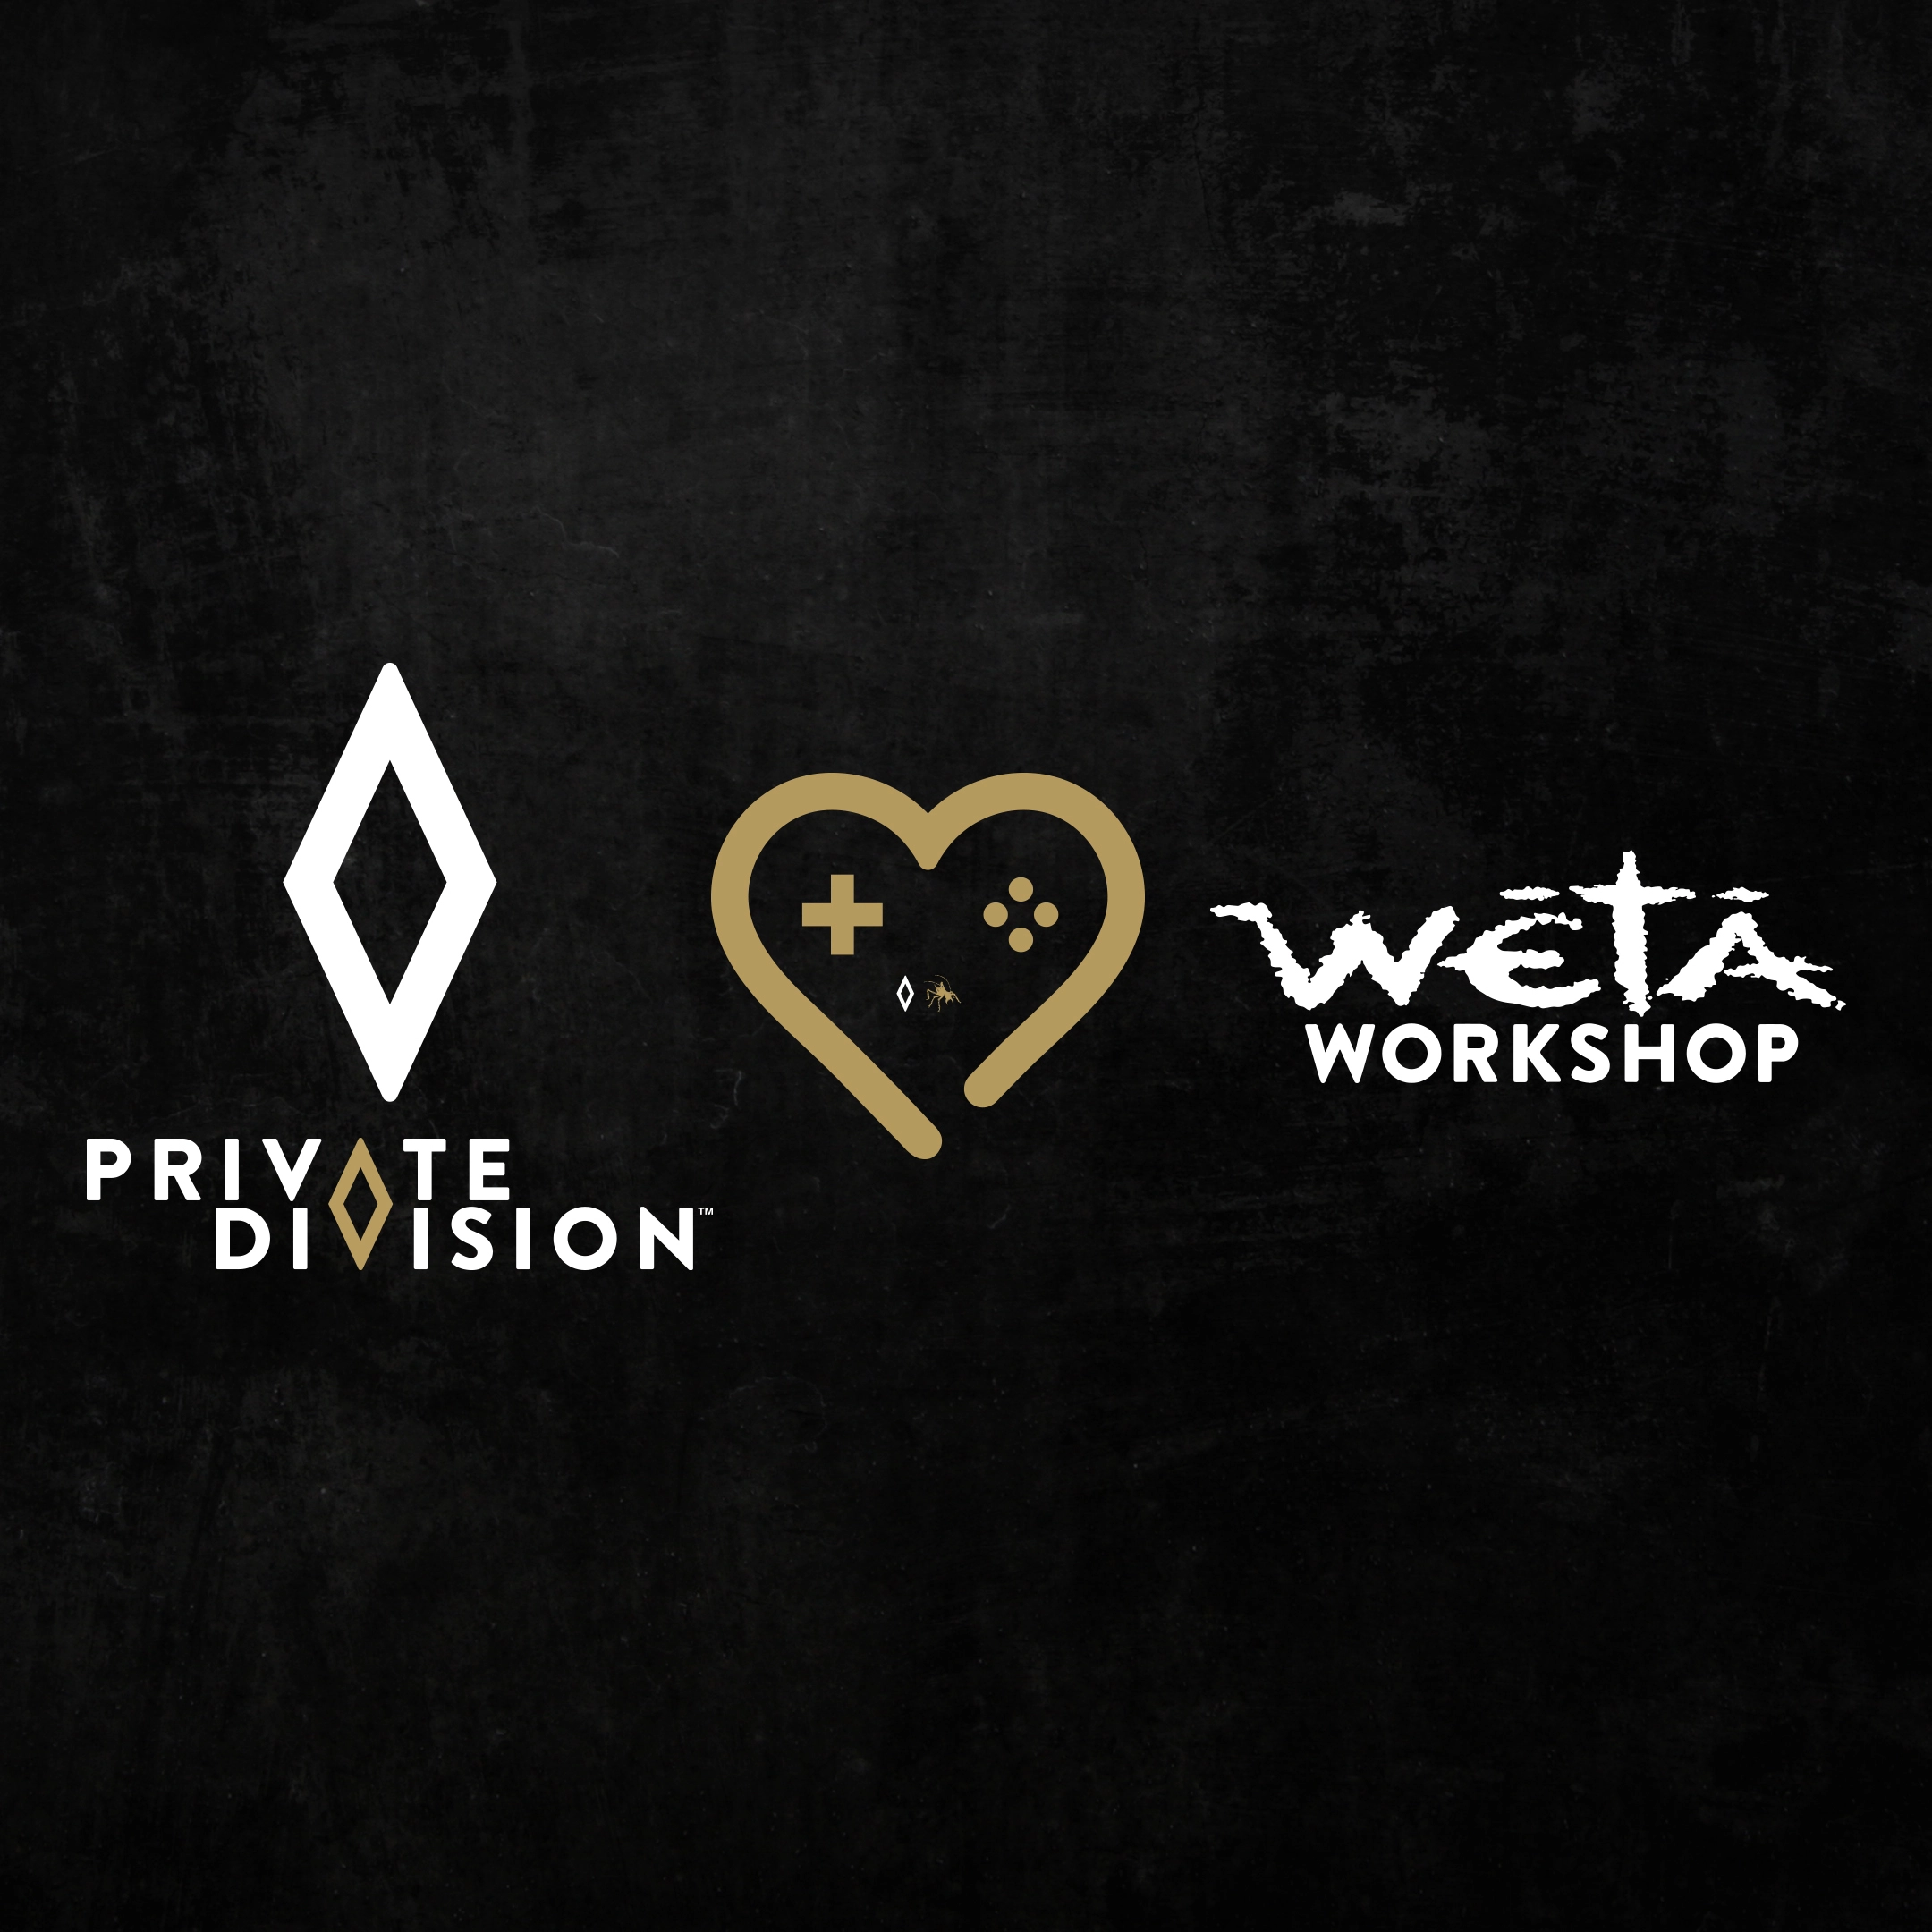 PrivateDivision_WetaWorkshop_Announcement_2160x2160.webp